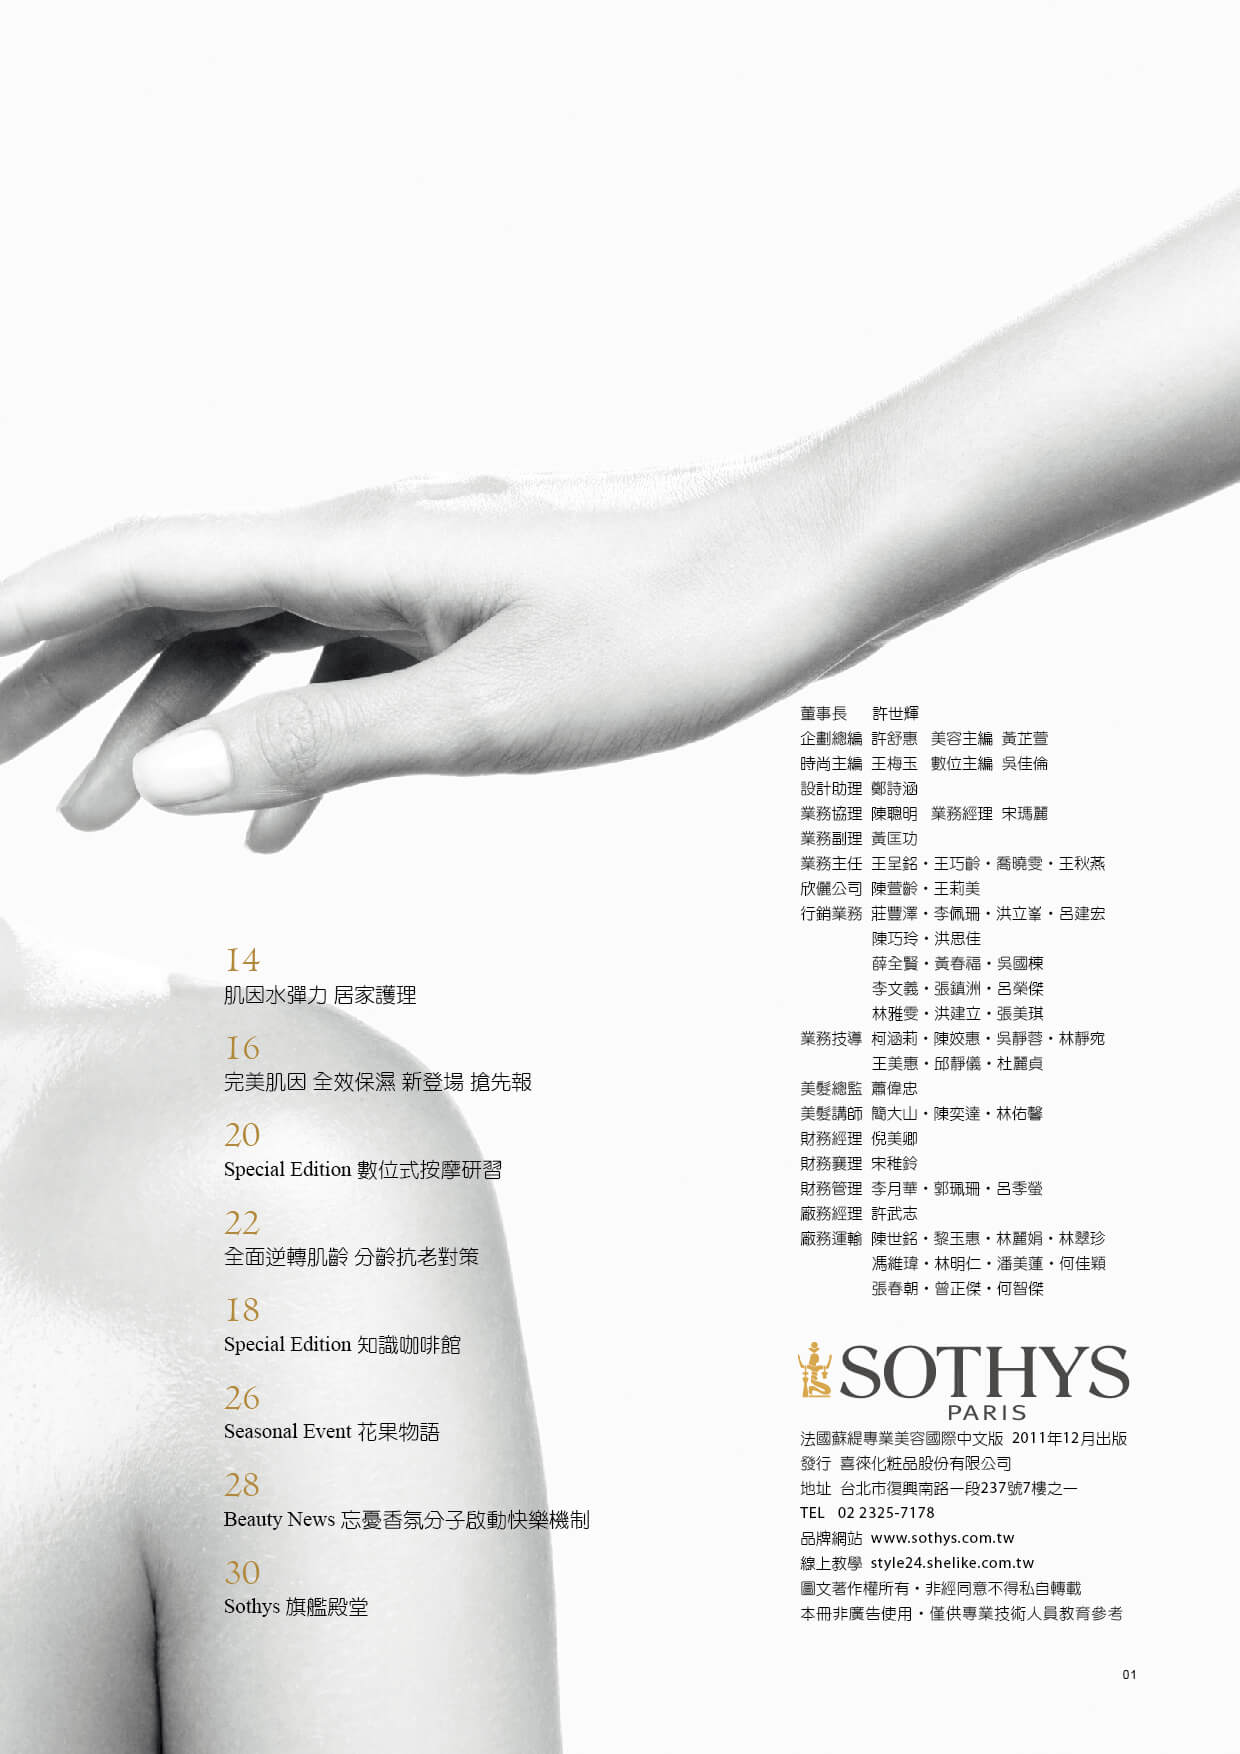 SOTHYS季刊-NO4-目錄_工作區域 2.jpg